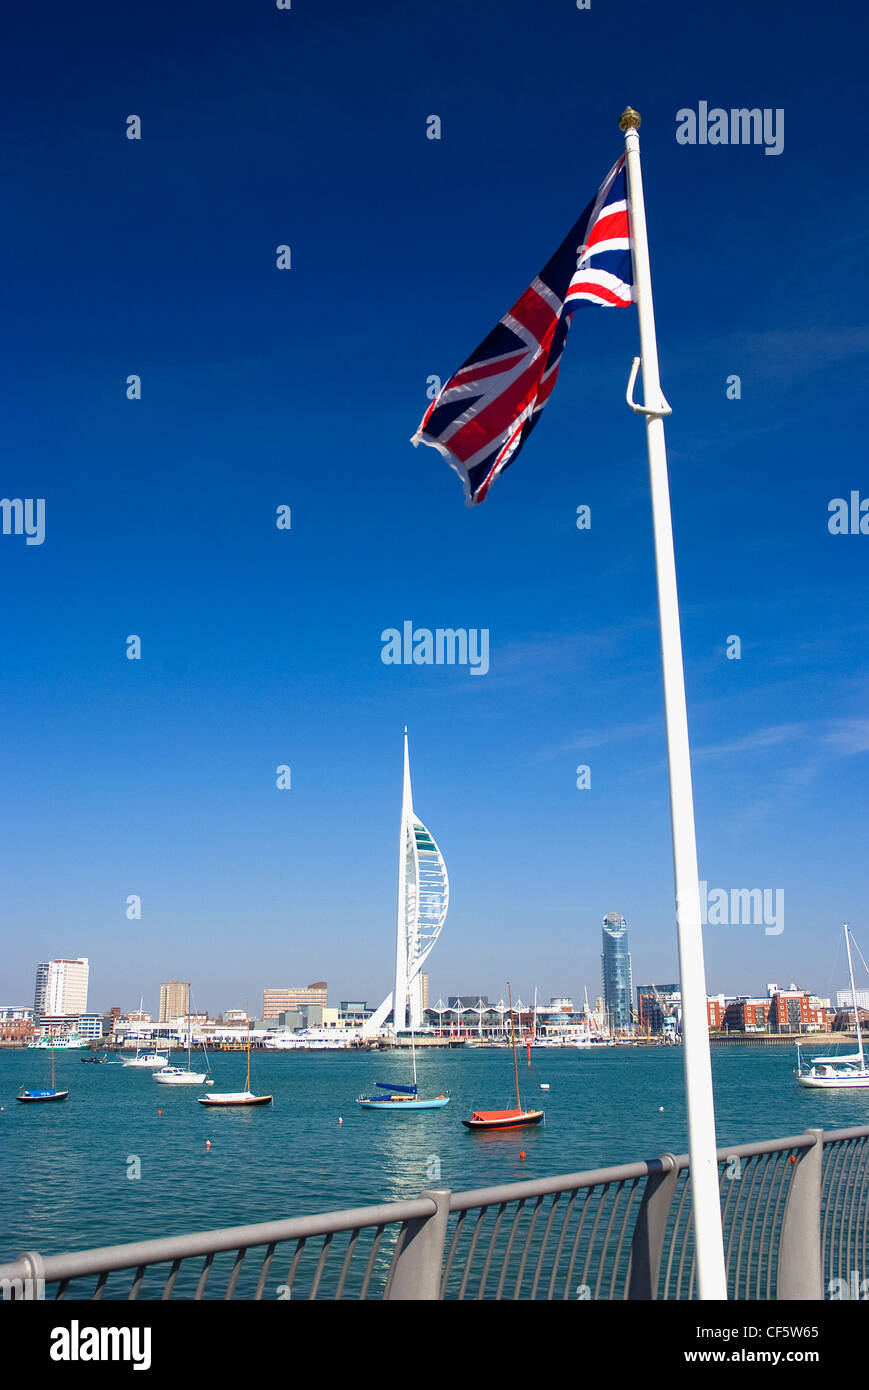 Ein Union Jack-Flagge an der Uferpromenade in Gosport gegenüber der 170m hohe Spinnaker Tower in Gunwharf Quays in Portsmouth Har Stockfoto